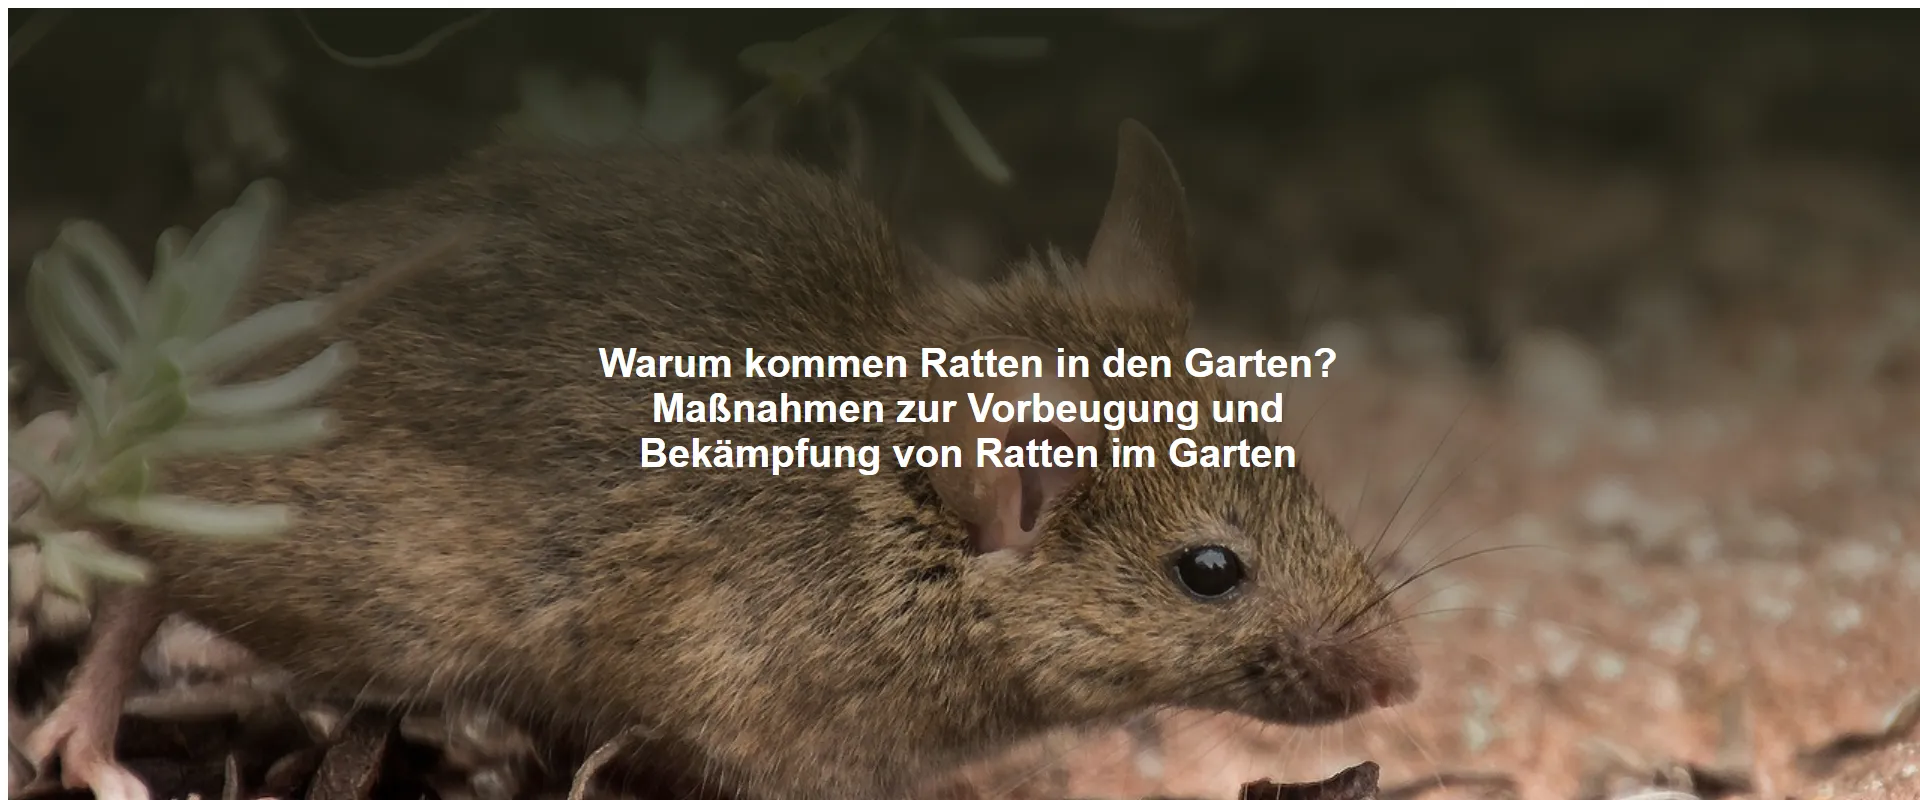 Warum kommen Ratten in den Garten? Maßnahmen zur Vorbeugung und Bekämpfung von Ratten im Garten